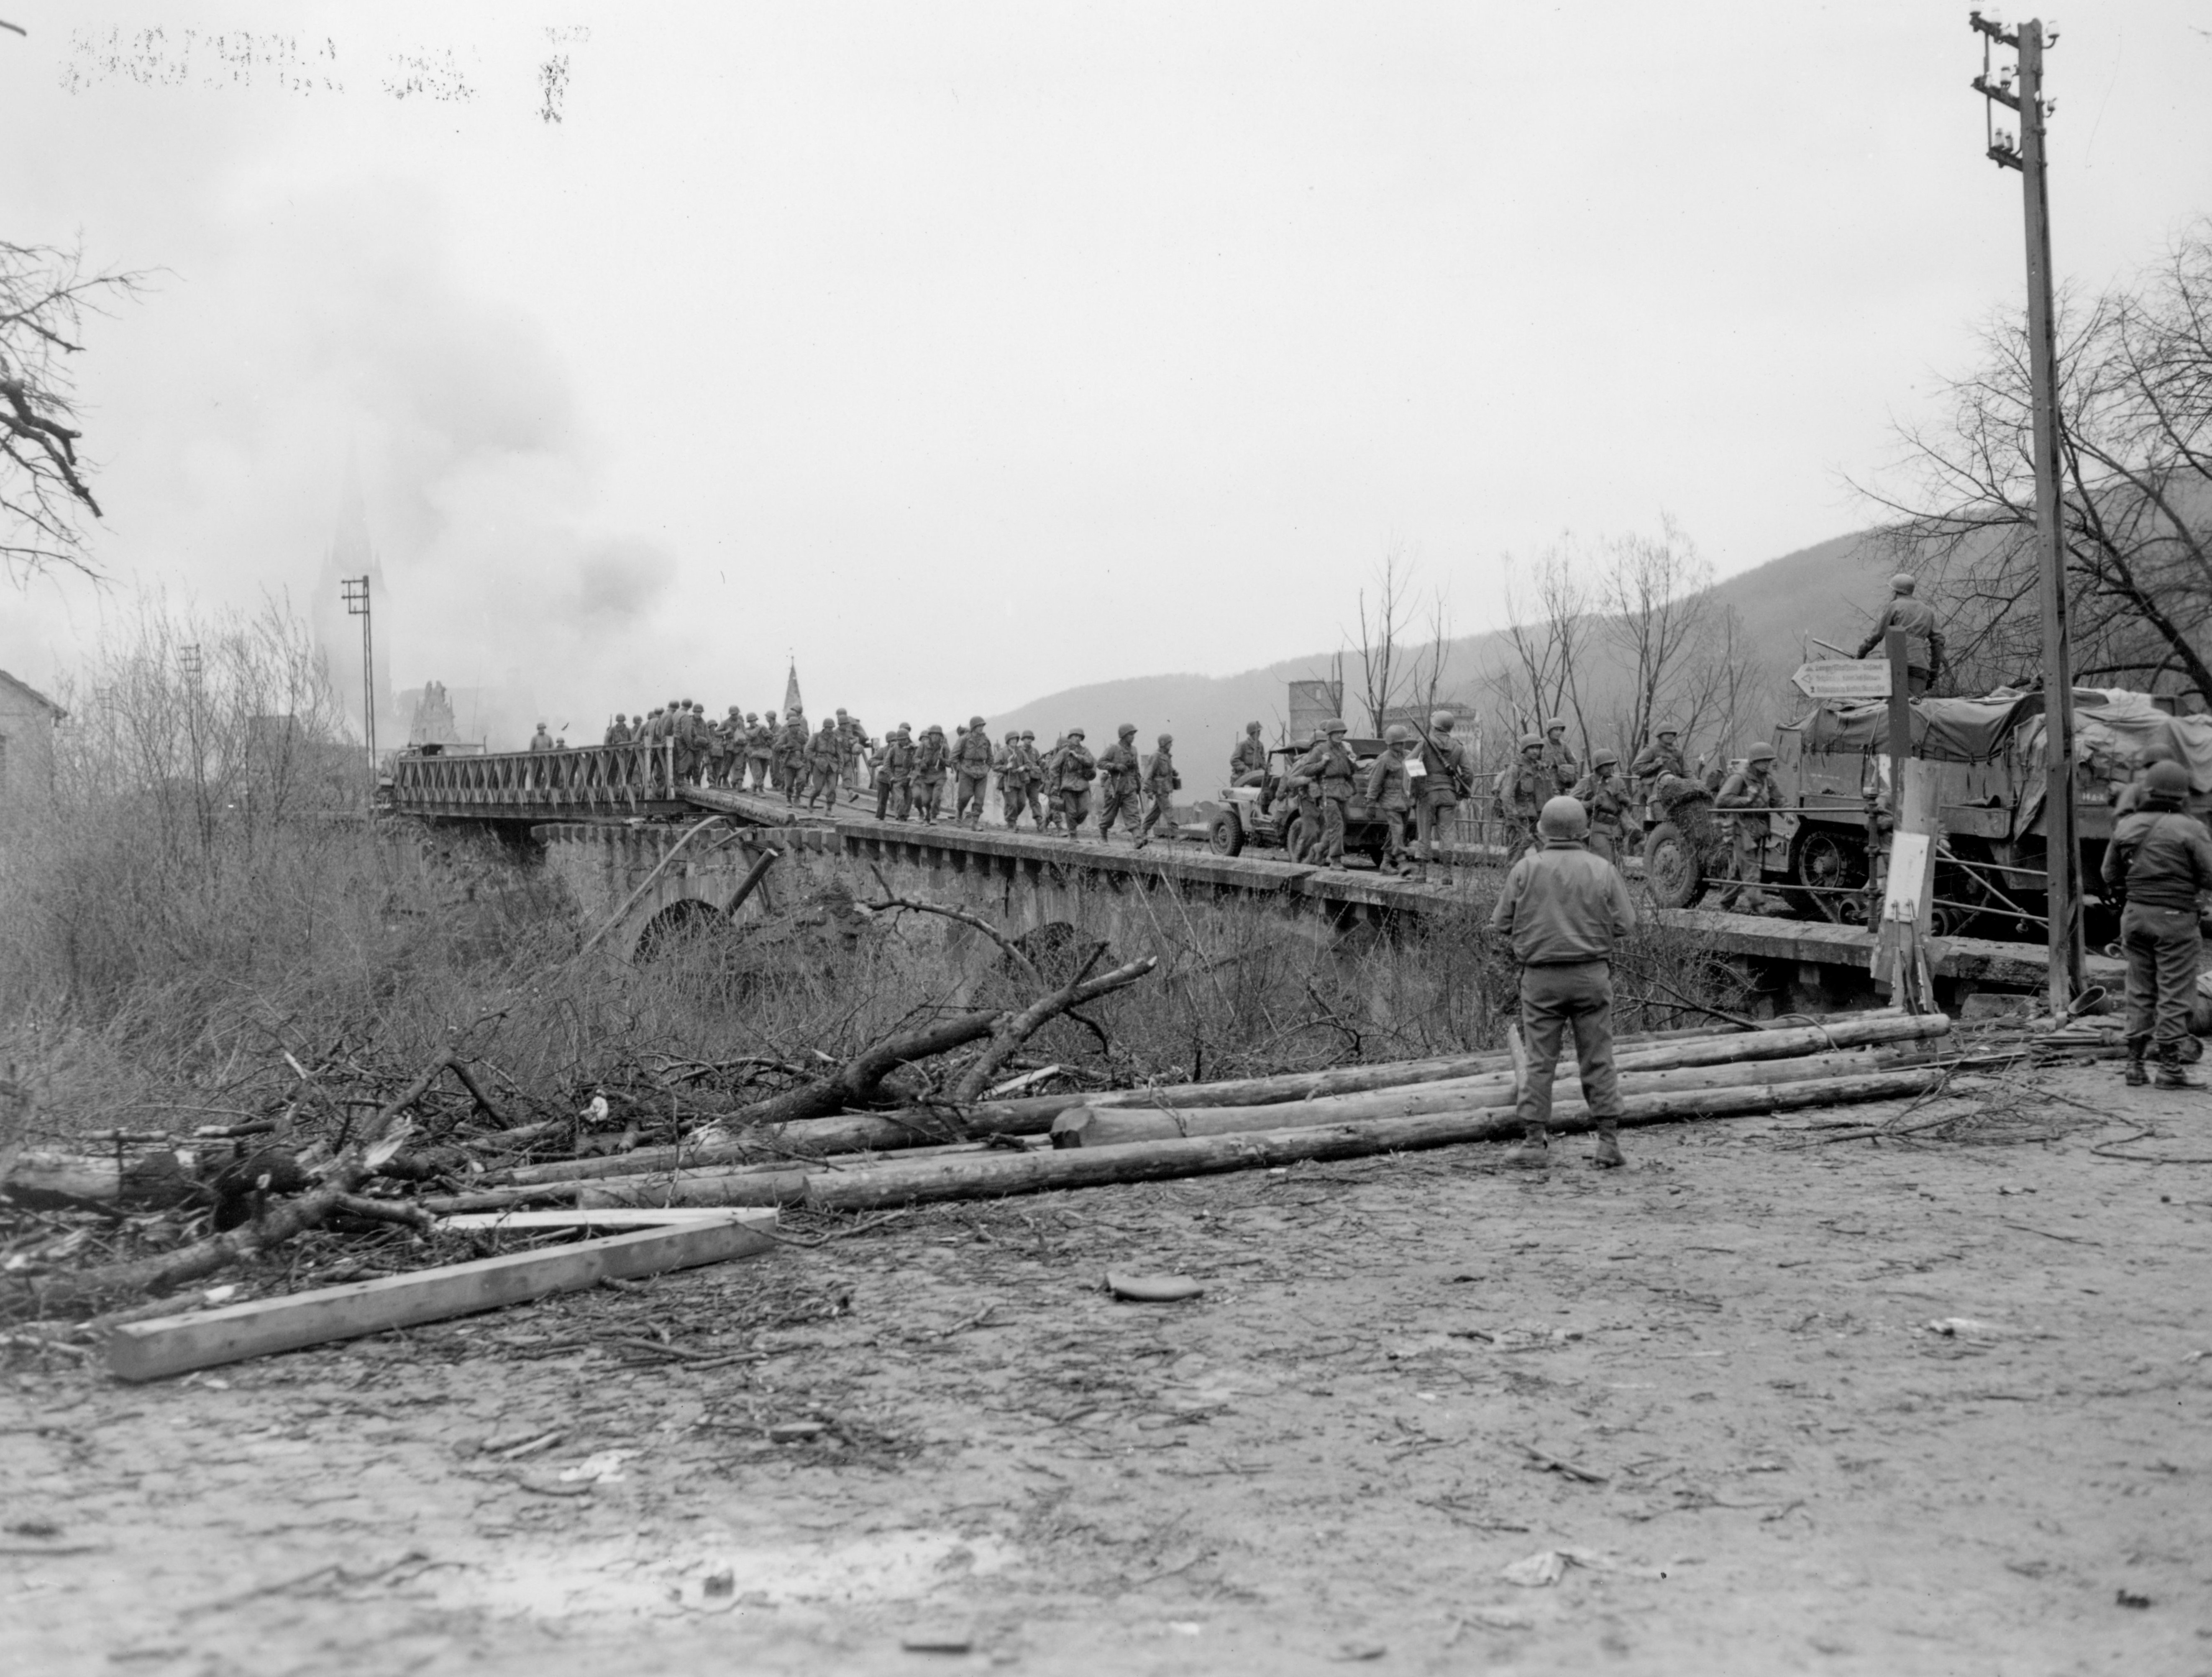 US soldiers crossing a footbridge